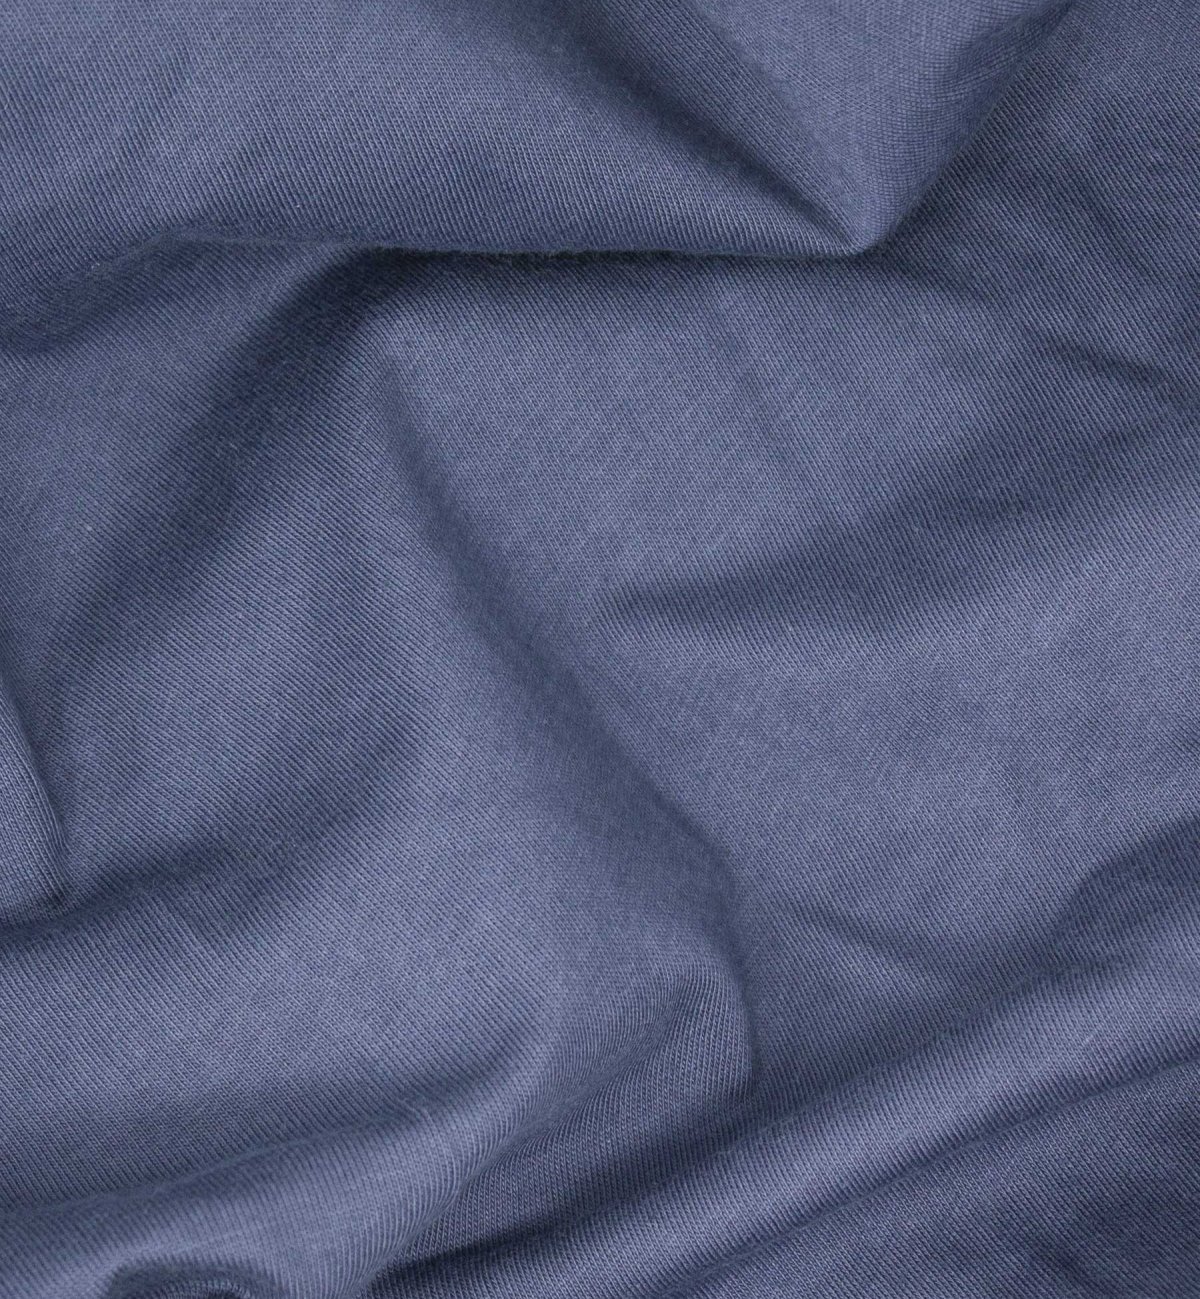 Spannbettlaken aus Bio-Baumwolle jersey in Kadolis-Farben